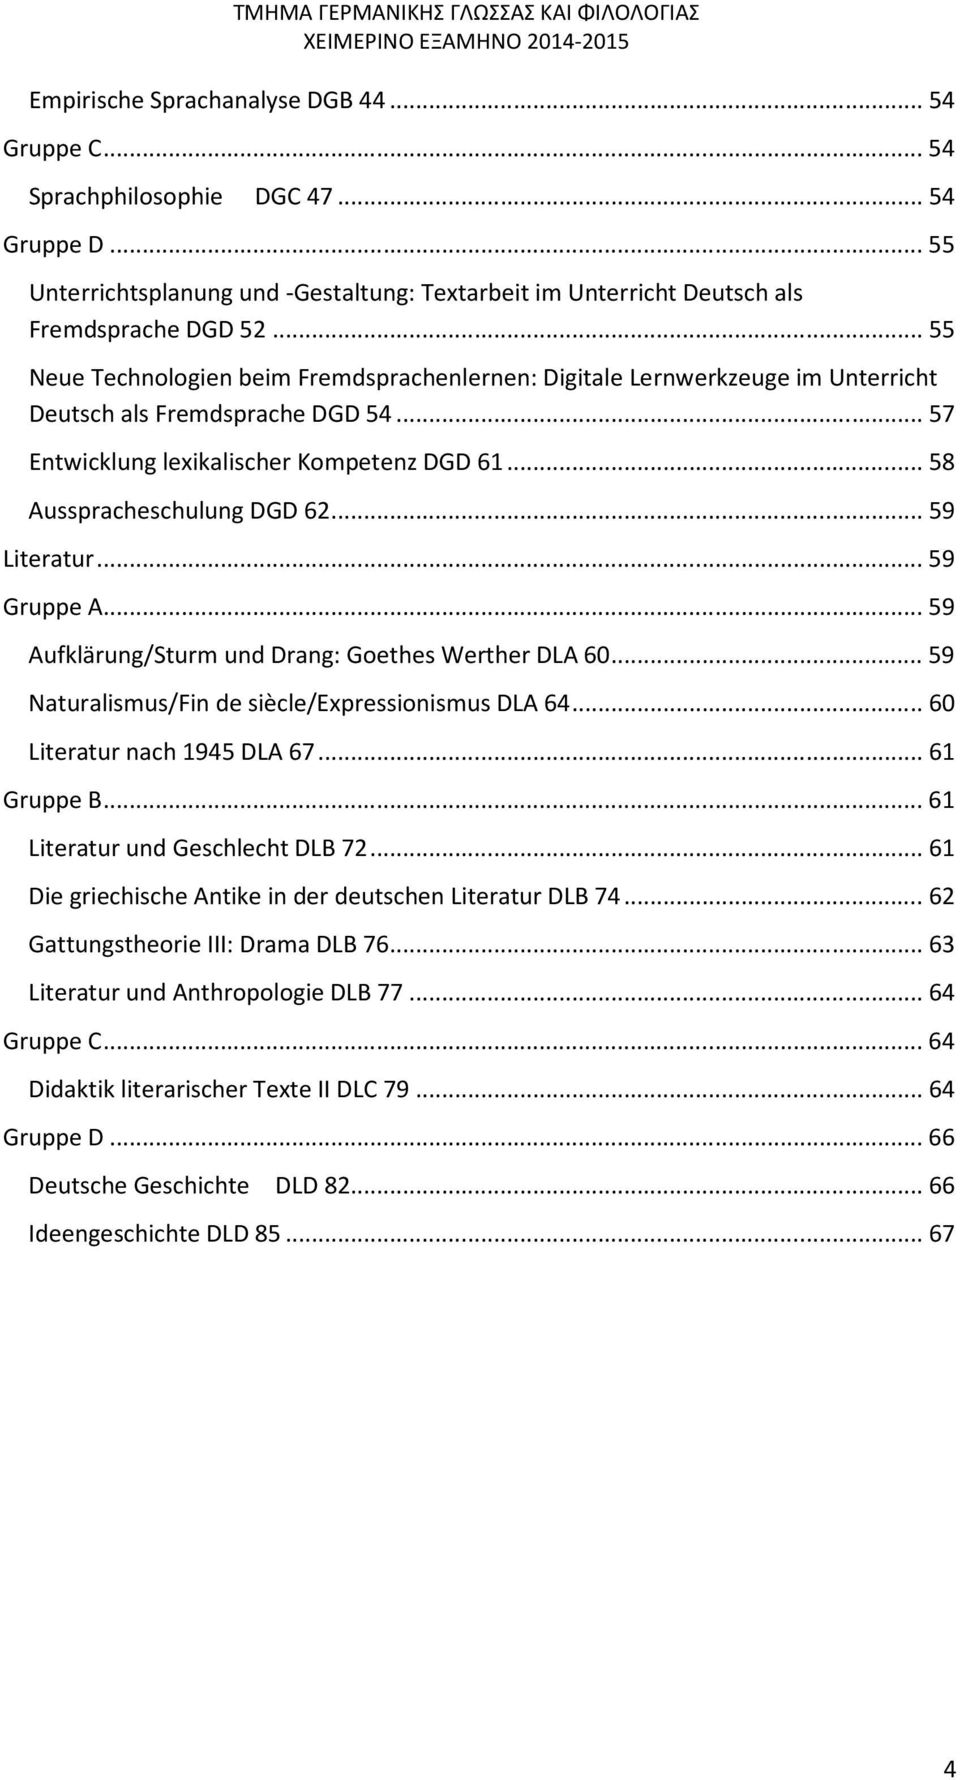 .. 55 Neue Technologien beim Fremdsprachenlernen: Digitale Lernwerkzeuge im Unterricht Deutsch als Fremdsprache DGD 54... 57 Entwicklung lexikalischer Kompetenz DGD 61... 58 Ausspracheschulung DGD 62.